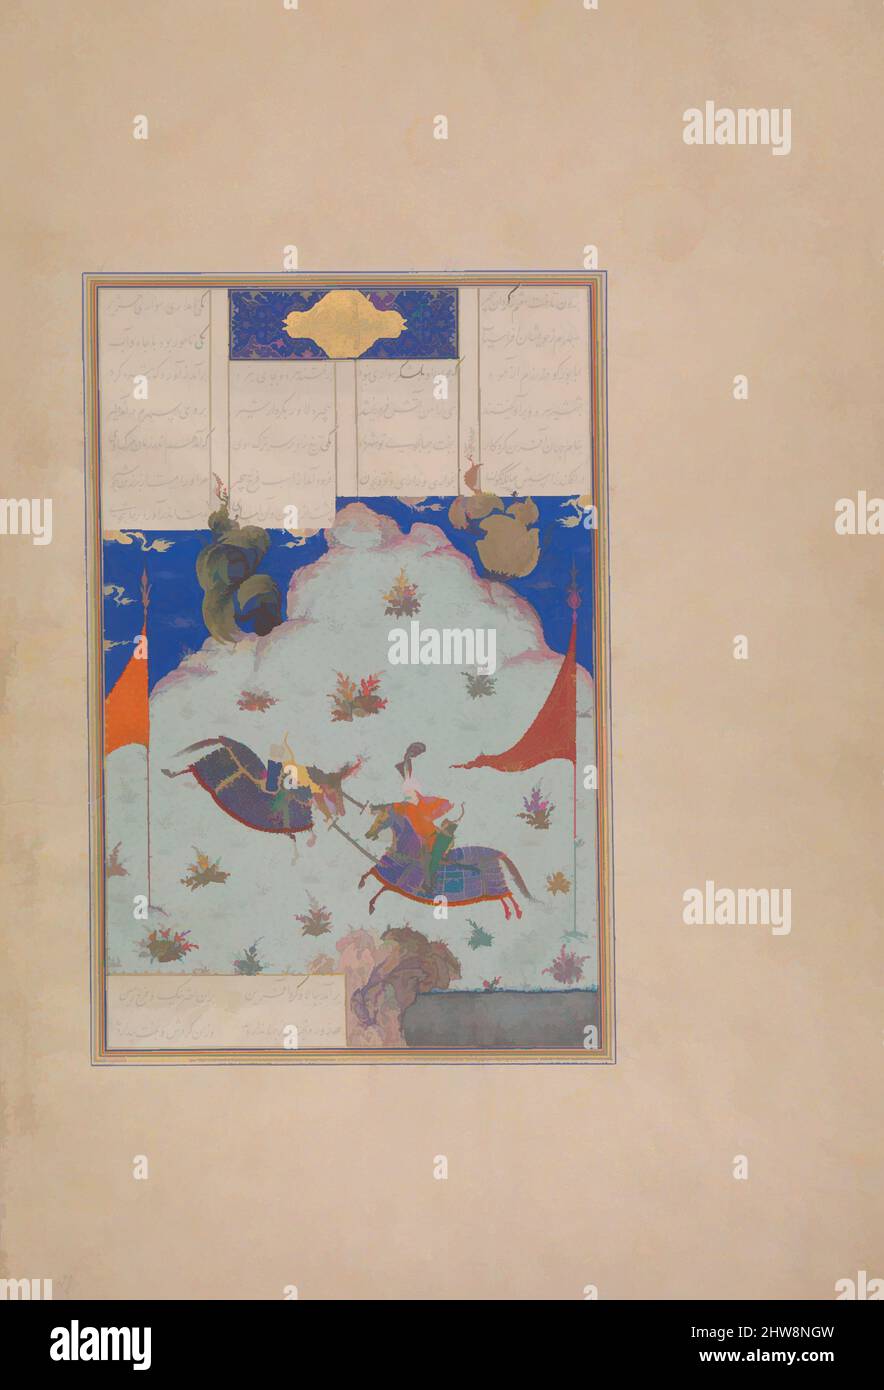 Arte ispirata dal sesto Joust dei Rooks: Bizhan contro Ruyyin', Folio 343r dal Shahnama (Libro dei Re) di Shah Tahmasp, ca. 1525–30, fabbricato in Iran, Tabriz, acquerello opaco, inchiostro, Argento e oro su carta, pittura (recto): H. 6 1/16 x W. 6 3/4 poll. (H. 15,4 x W. 17,1 cm, opere classiche modernizzate da Artotop con un tocco di modernità. Forme, colore e valore, impatto visivo accattivante sulle emozioni artistiche attraverso la libertà delle opere d'arte in modo contemporaneo. Un messaggio senza tempo che persegue una nuova direzione selvaggiamente creativa. Artisti che si rivolgono al supporto digitale e creano l'NFT Artotop Foto Stock